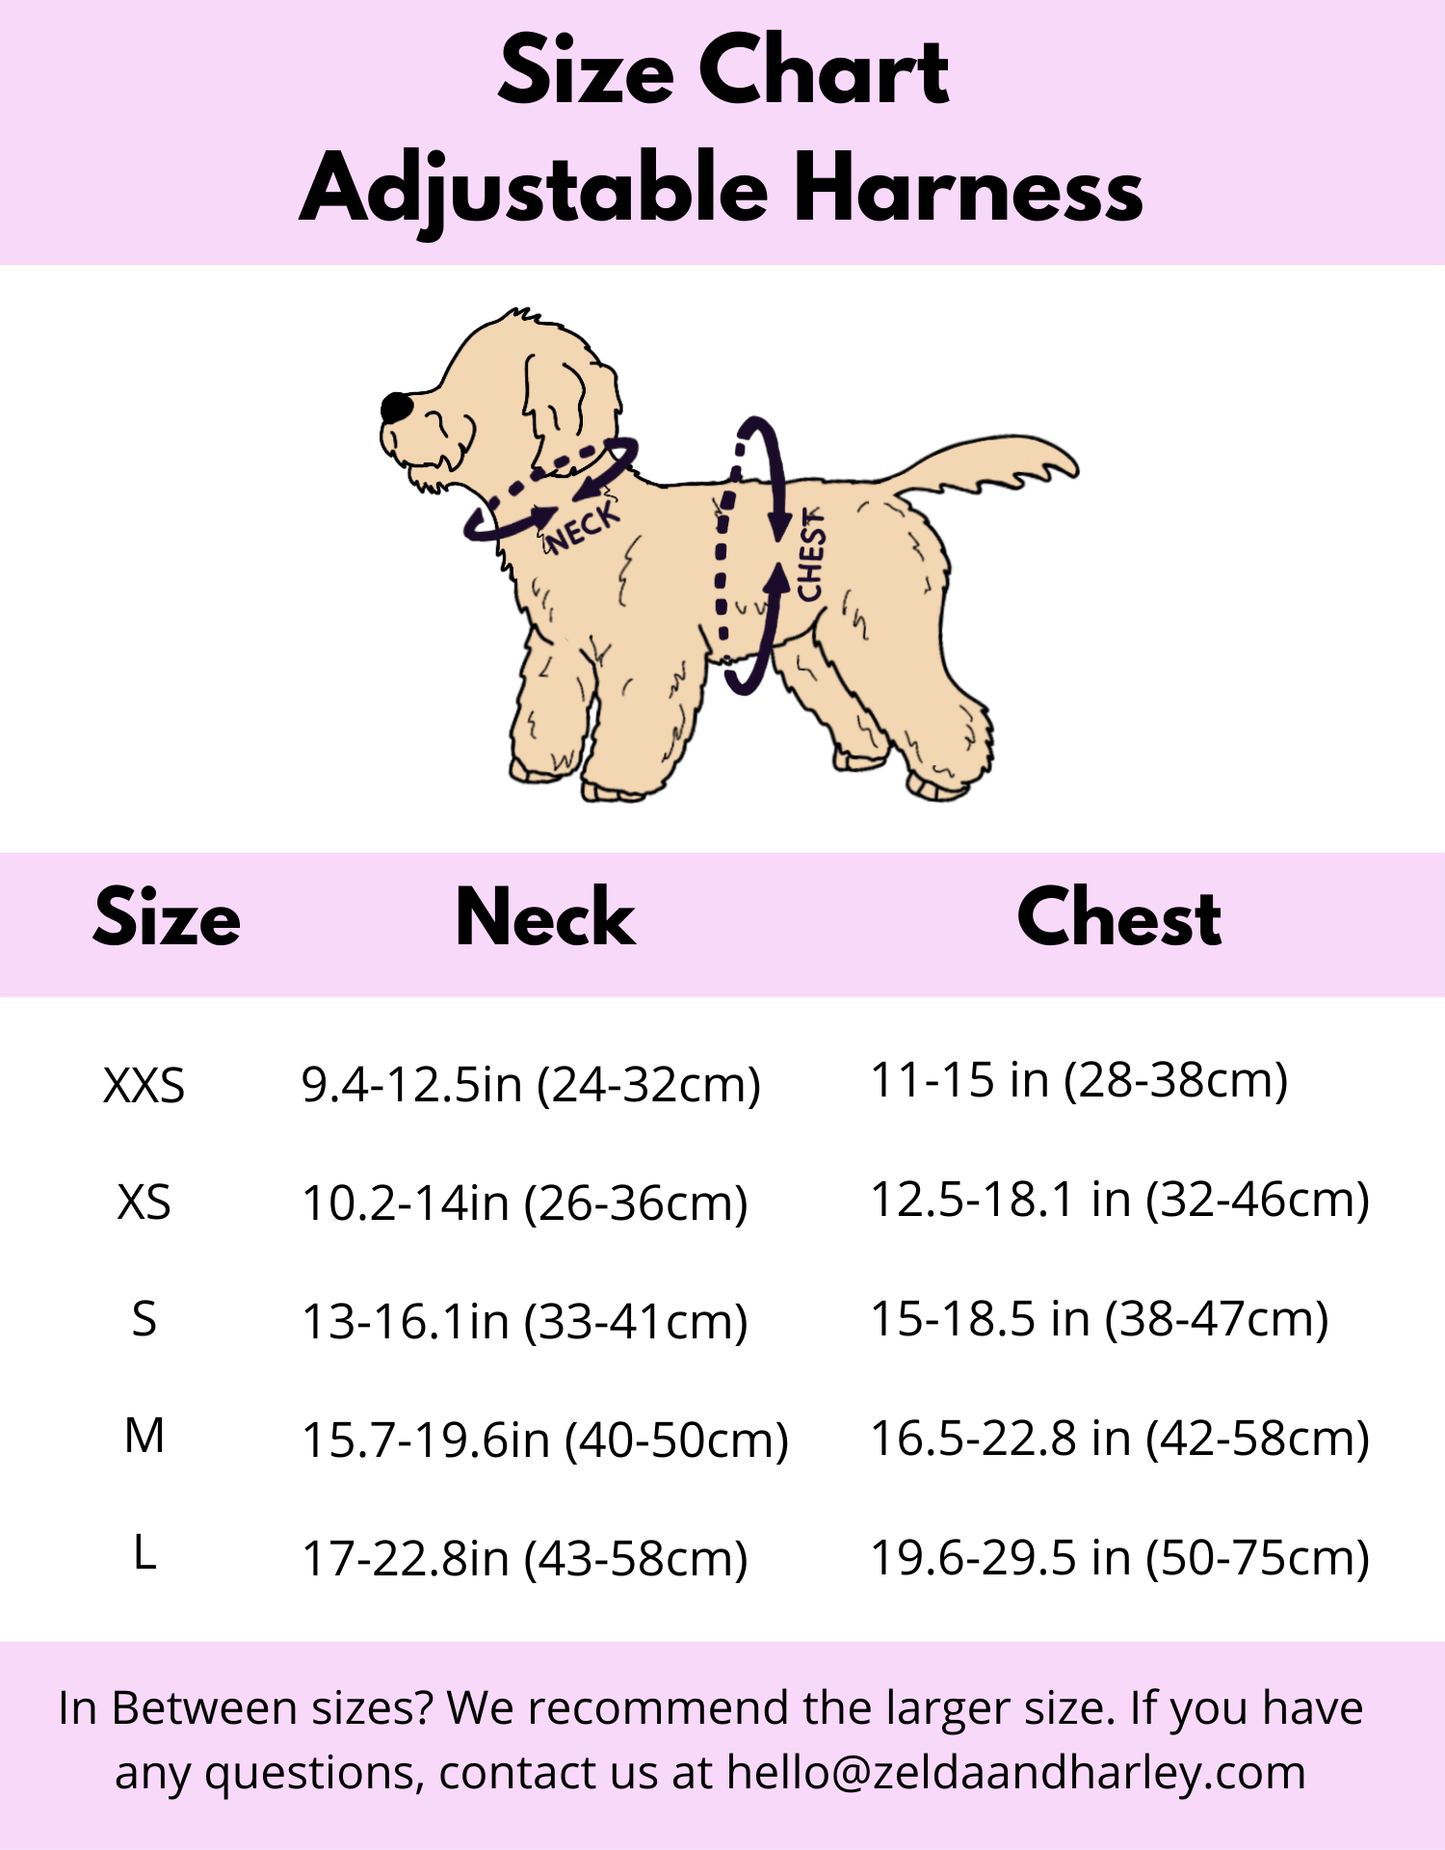 Zelda & Harley Harness Howl-lywood - No Pull Adjustable Dog Harness